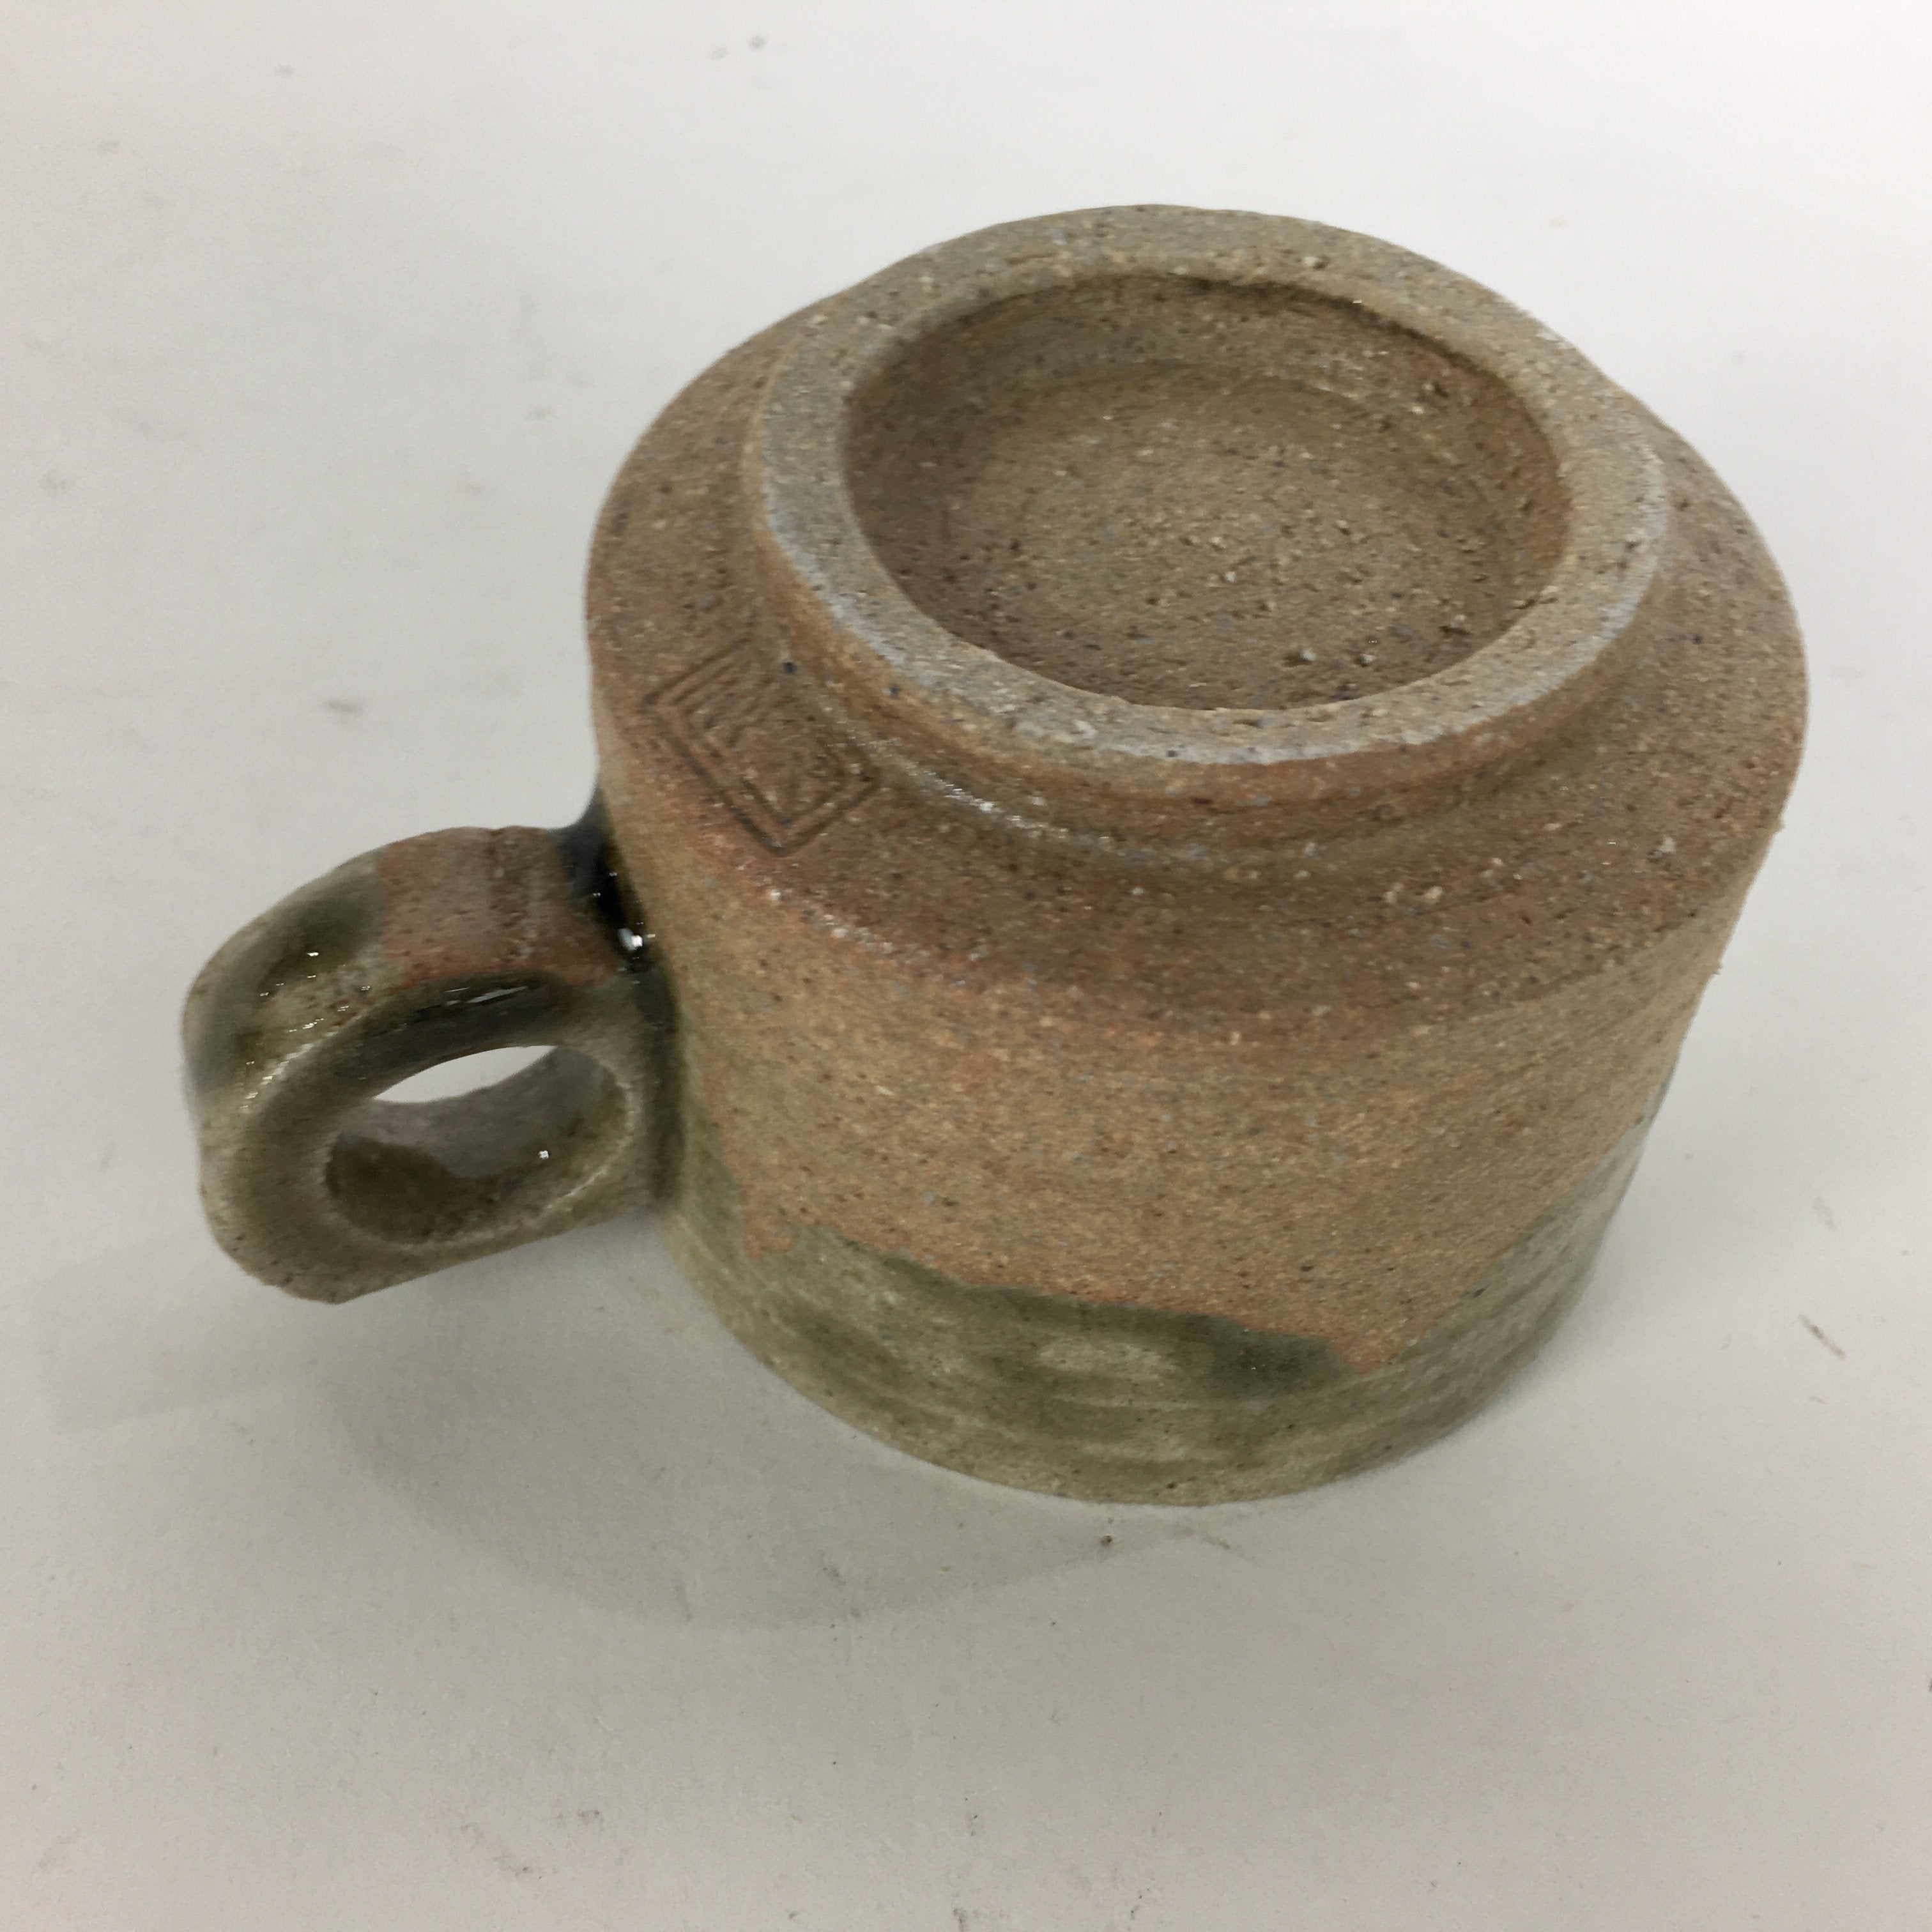 Japanese Ceramic Igayaki Teacup Mug Saucer Vtg Cup Plate Set Green Glaze PP571